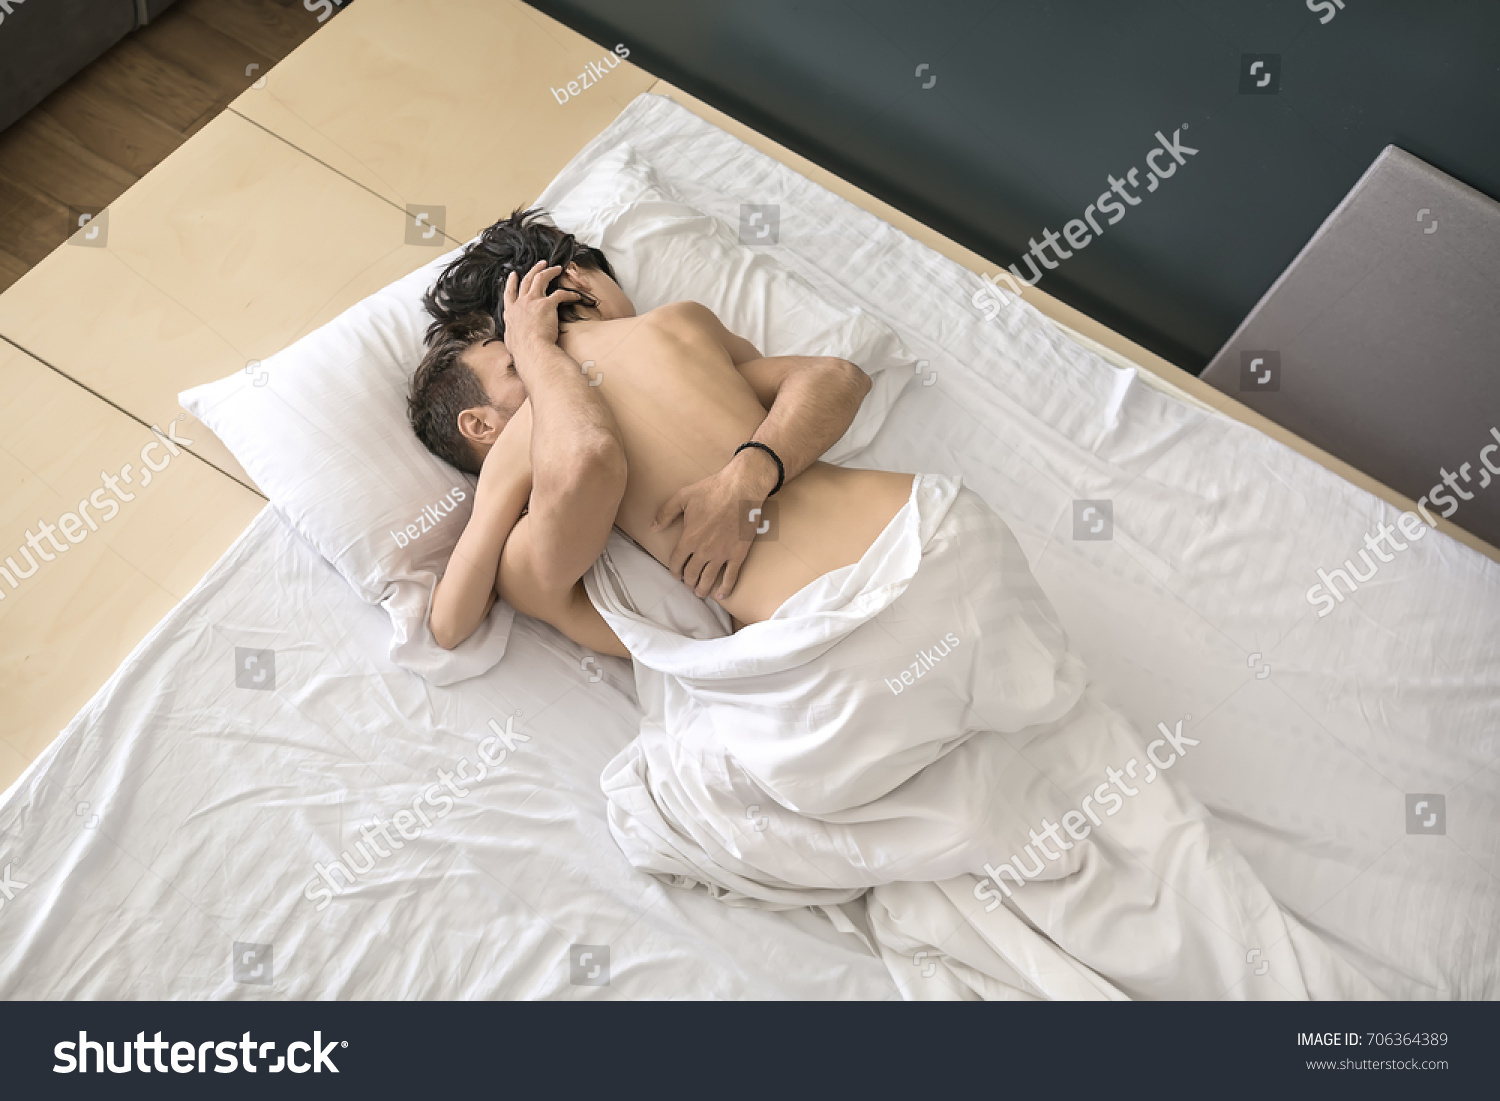 Couple sex nude Nude